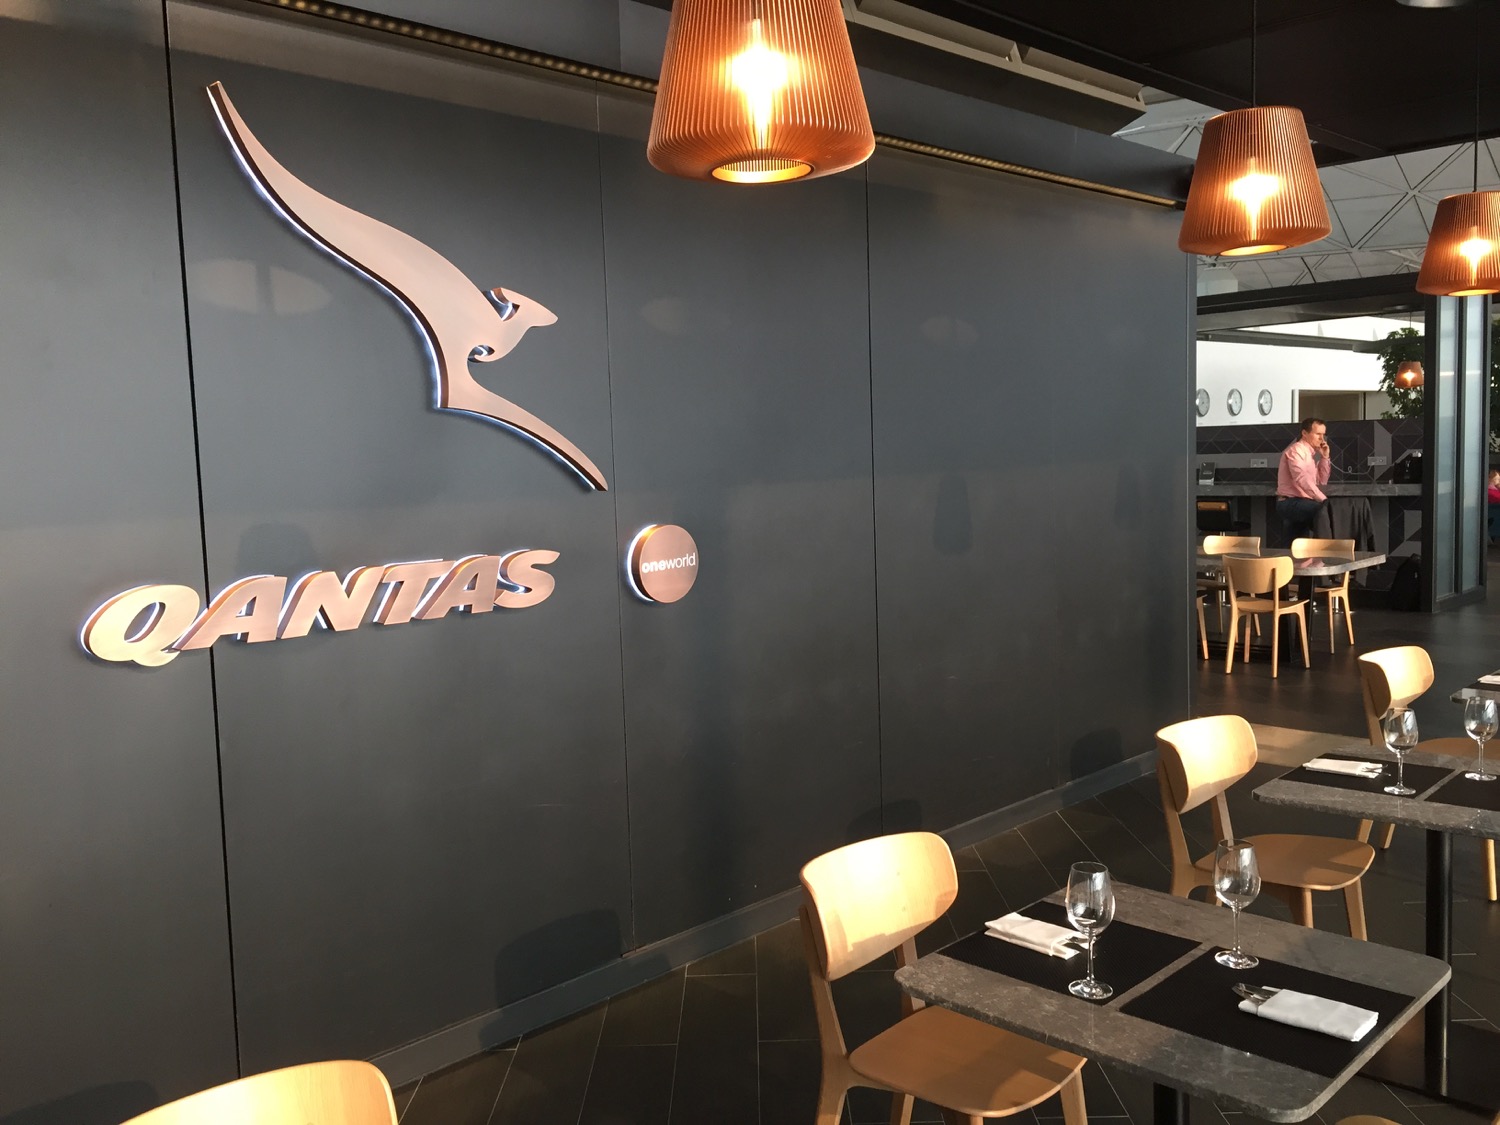 Qantas Lounge Review Hong Kong HKG - 17